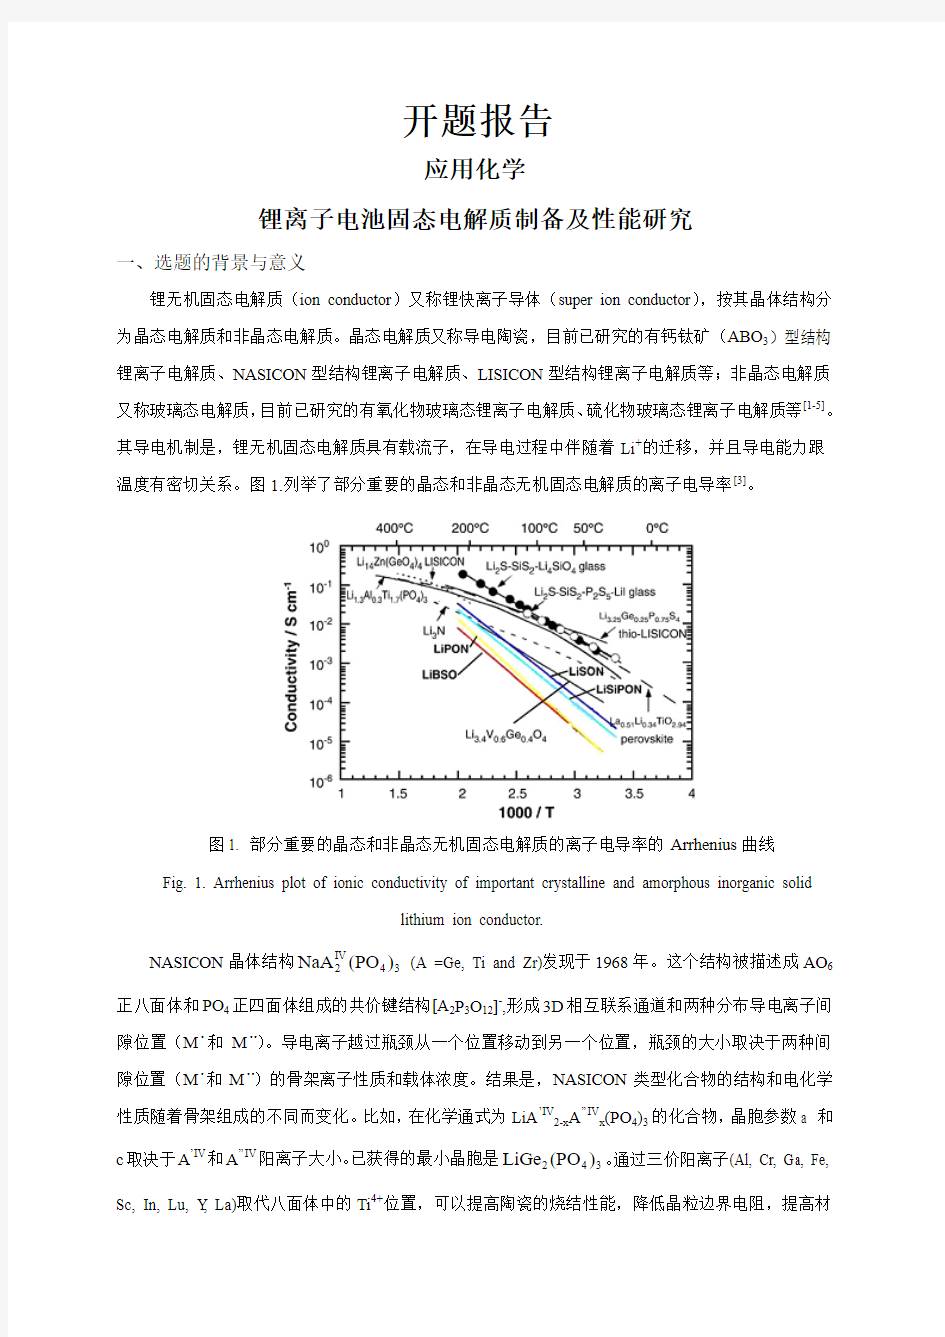 锂离子电池固态电解质制备及性能研究【开题报告】